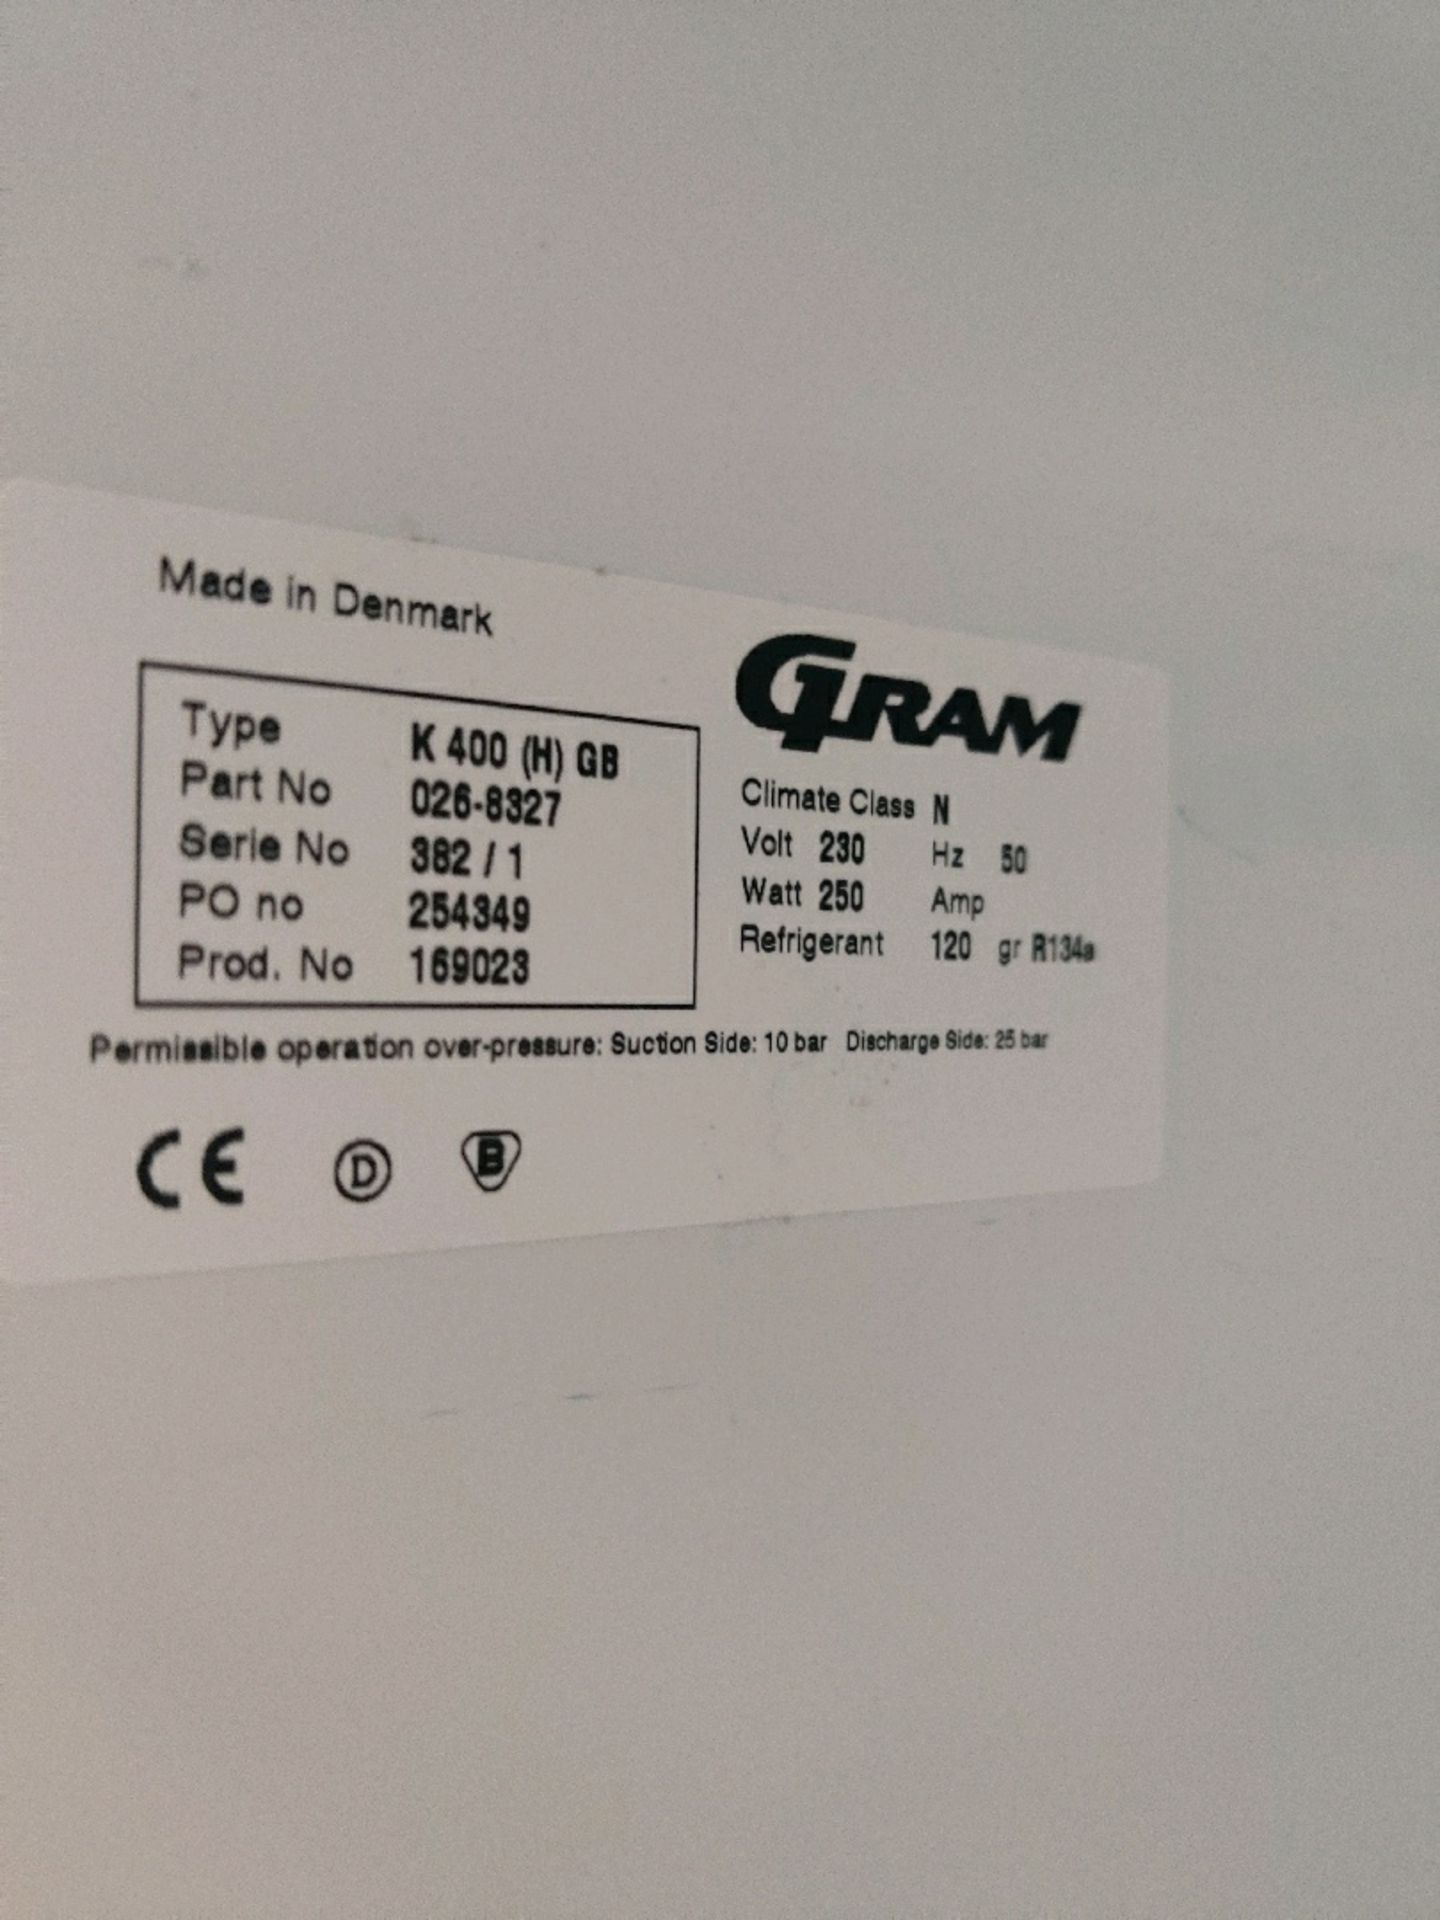 Gram K400 Fridge - Image 3 of 3